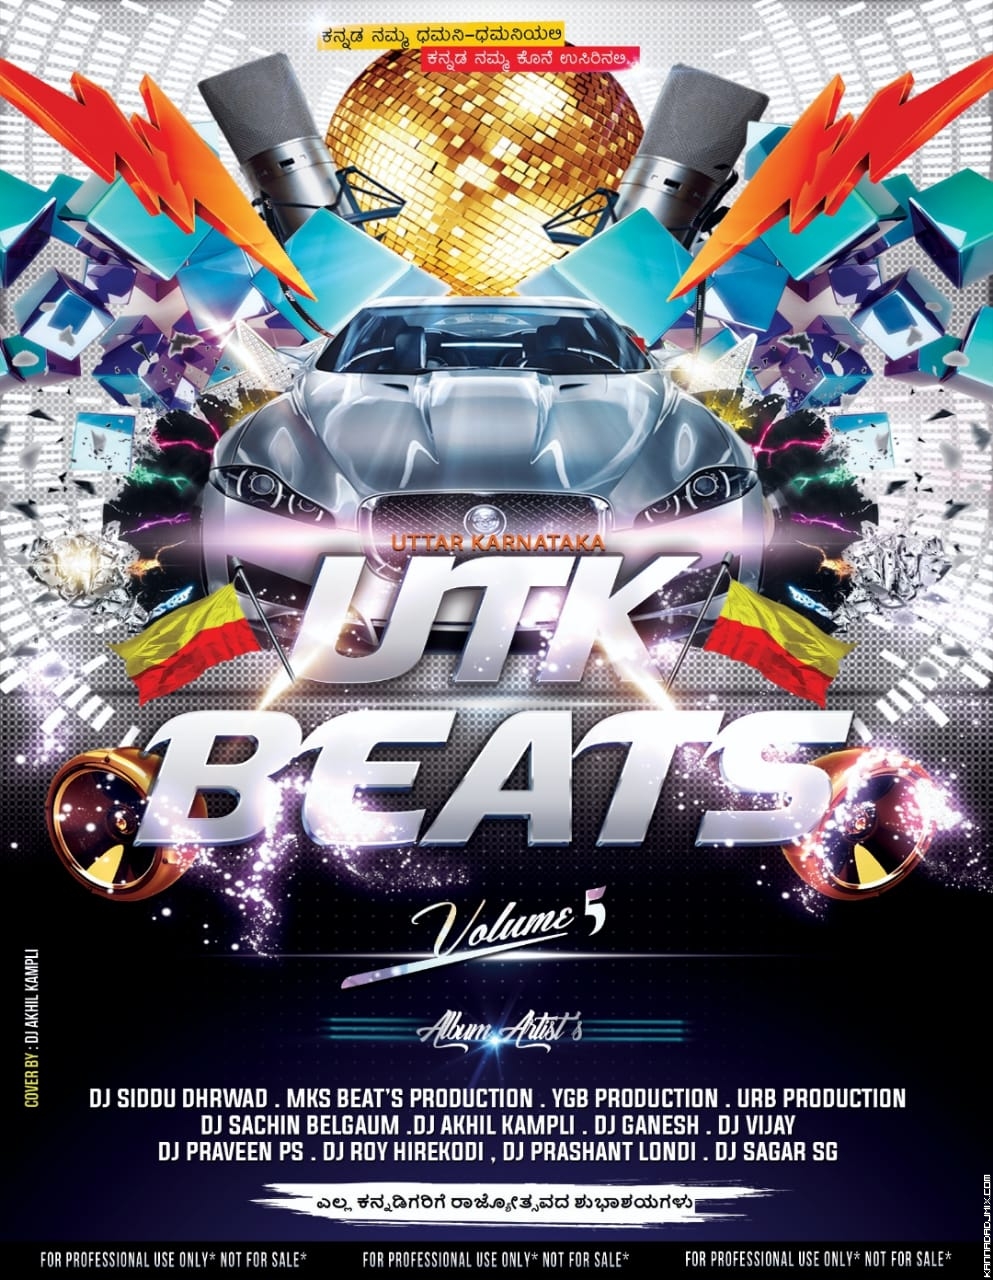 UTK Beats Vol 5